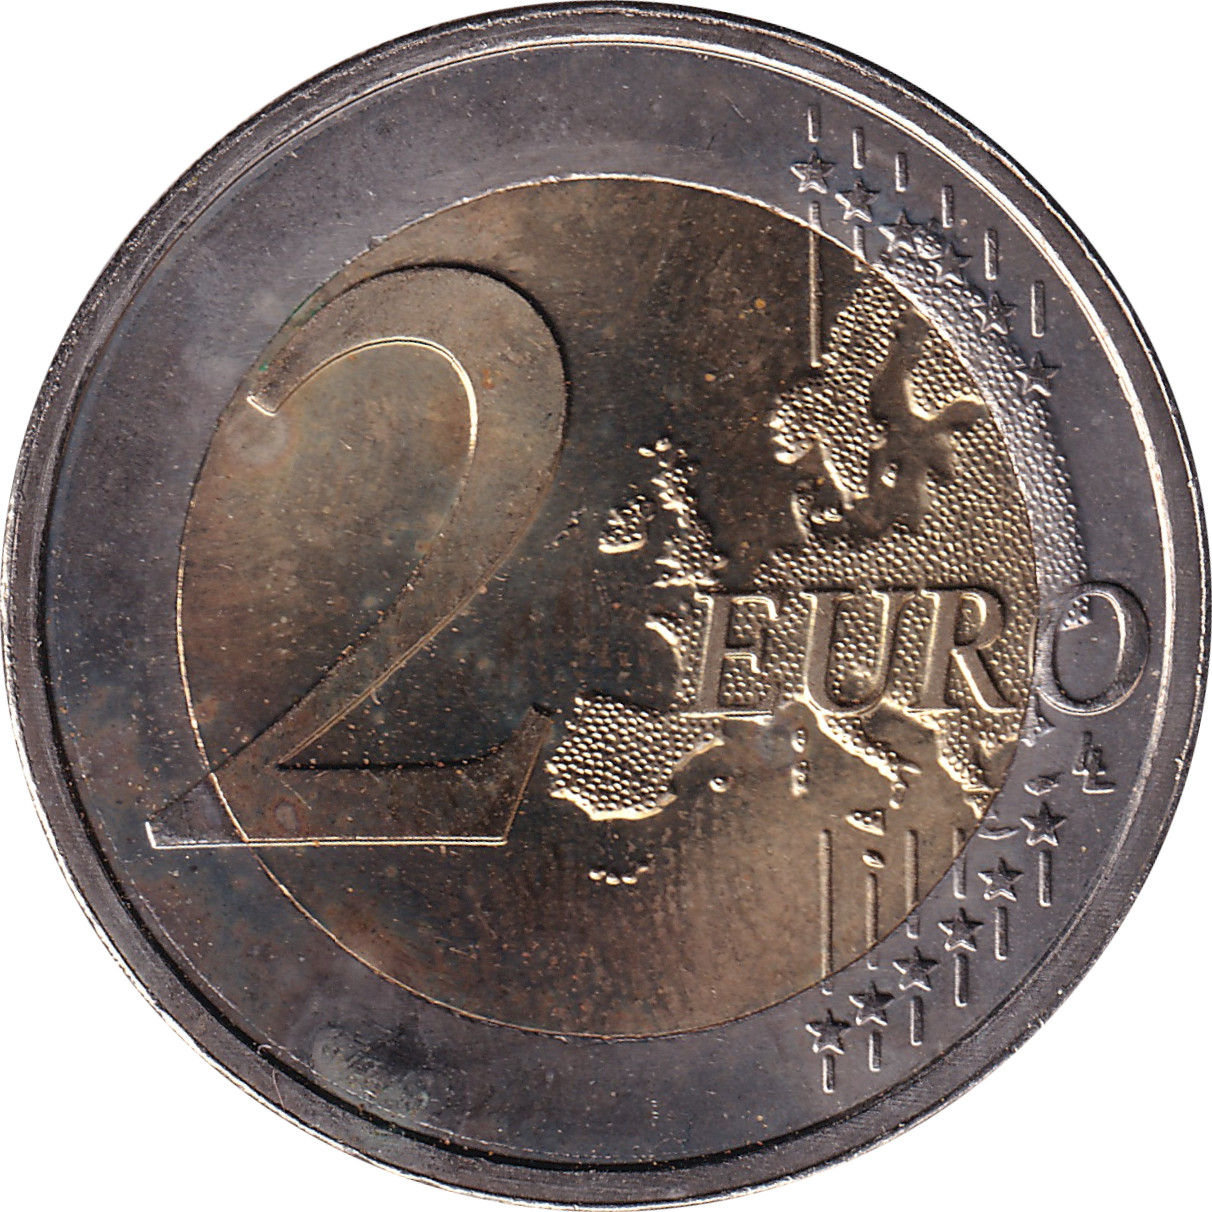 2 euro - Union Économique Monétaire - Luxembourg